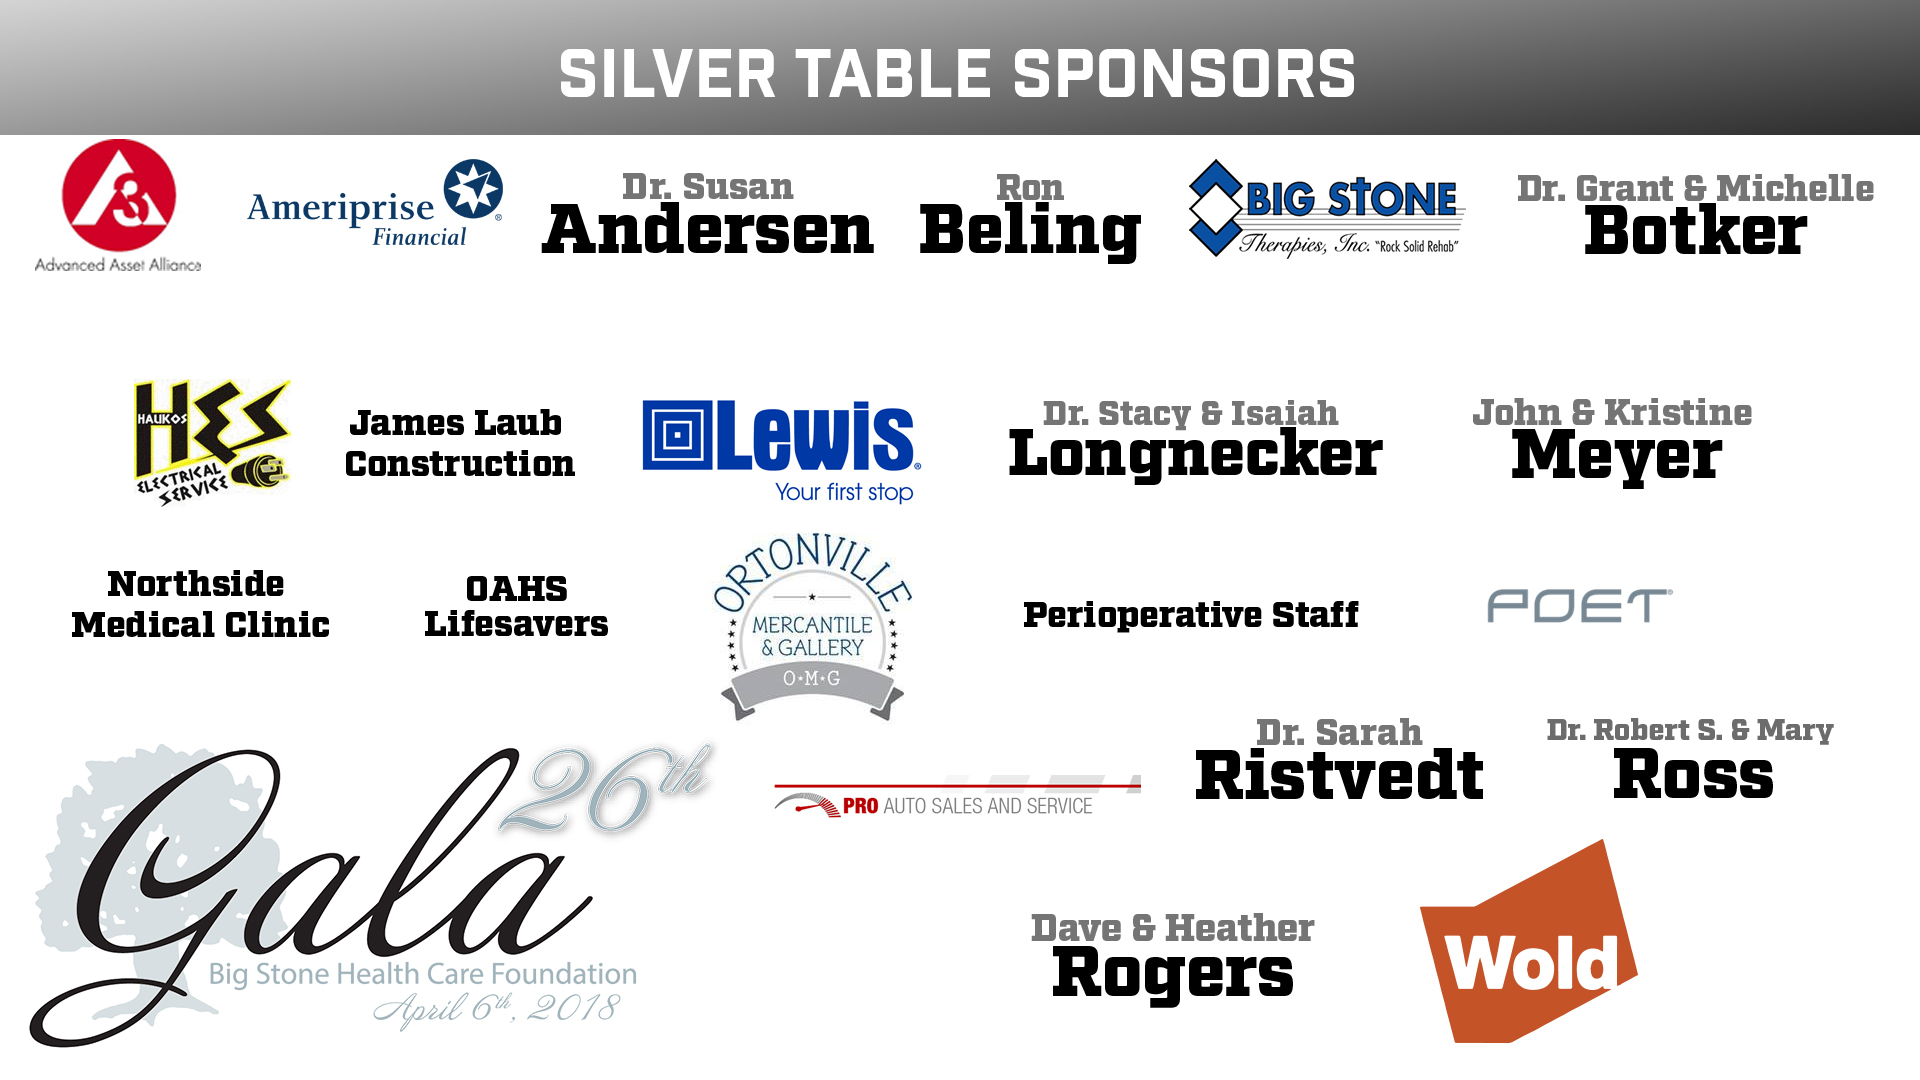 Silver Table Sponsors Silver Table Sponsors